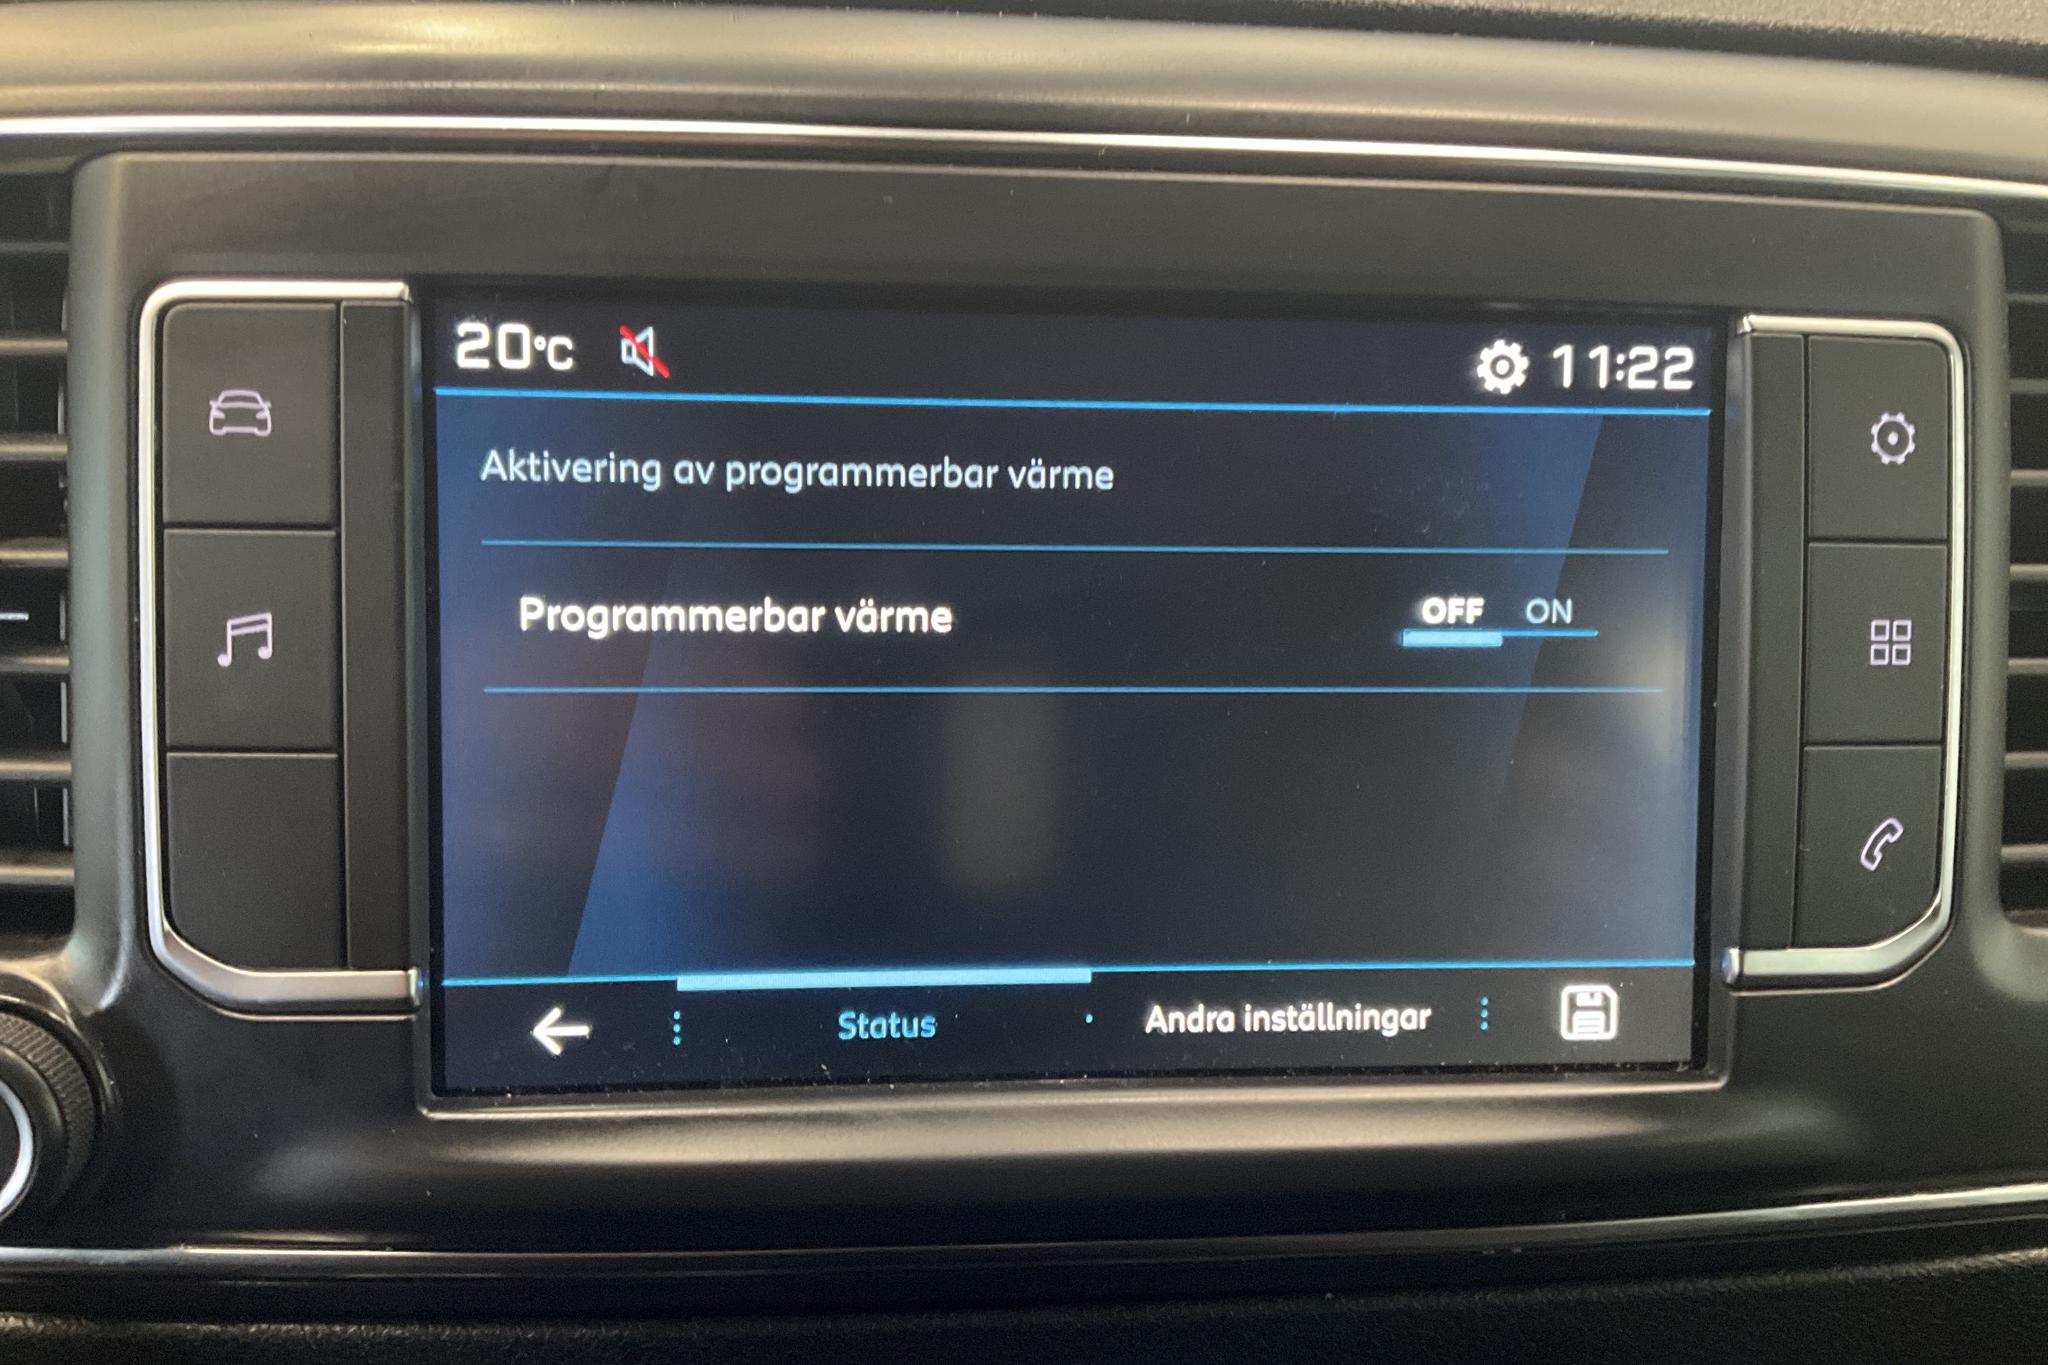 Peugeot Expert BlueHDi Skåp (180hk) - 83 050 km - Automatic - white - 2019